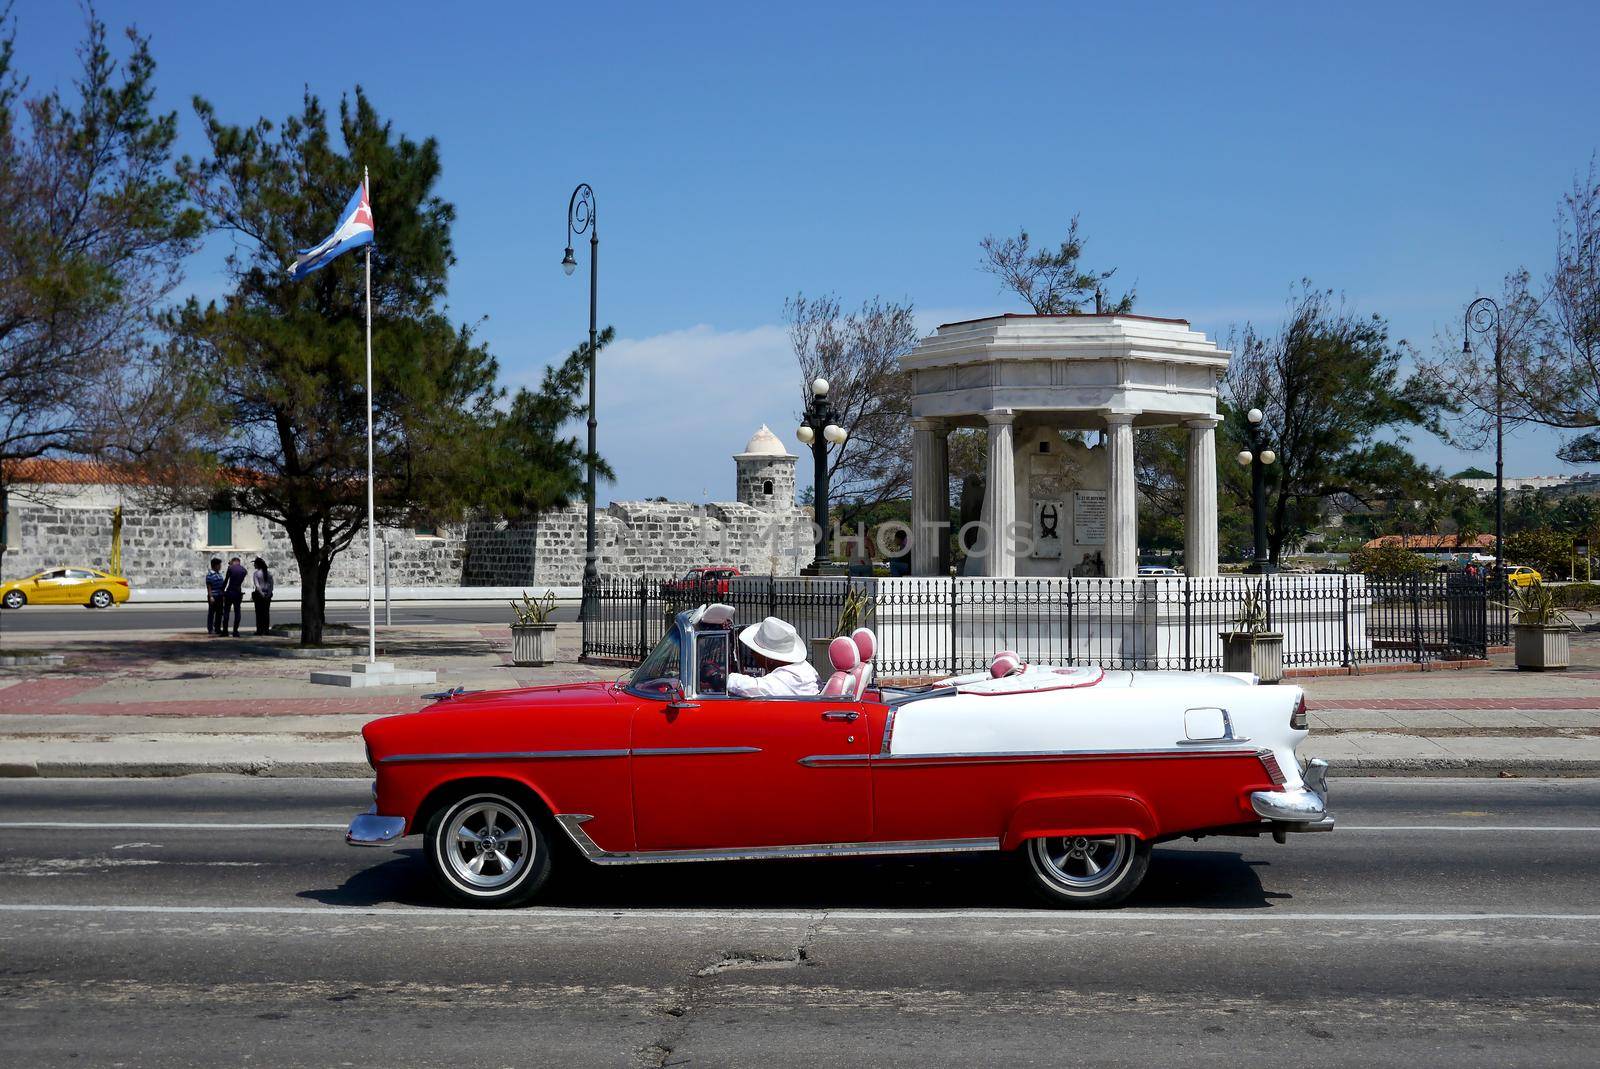 Classic old car in Havana, Cuba by fivepointsix